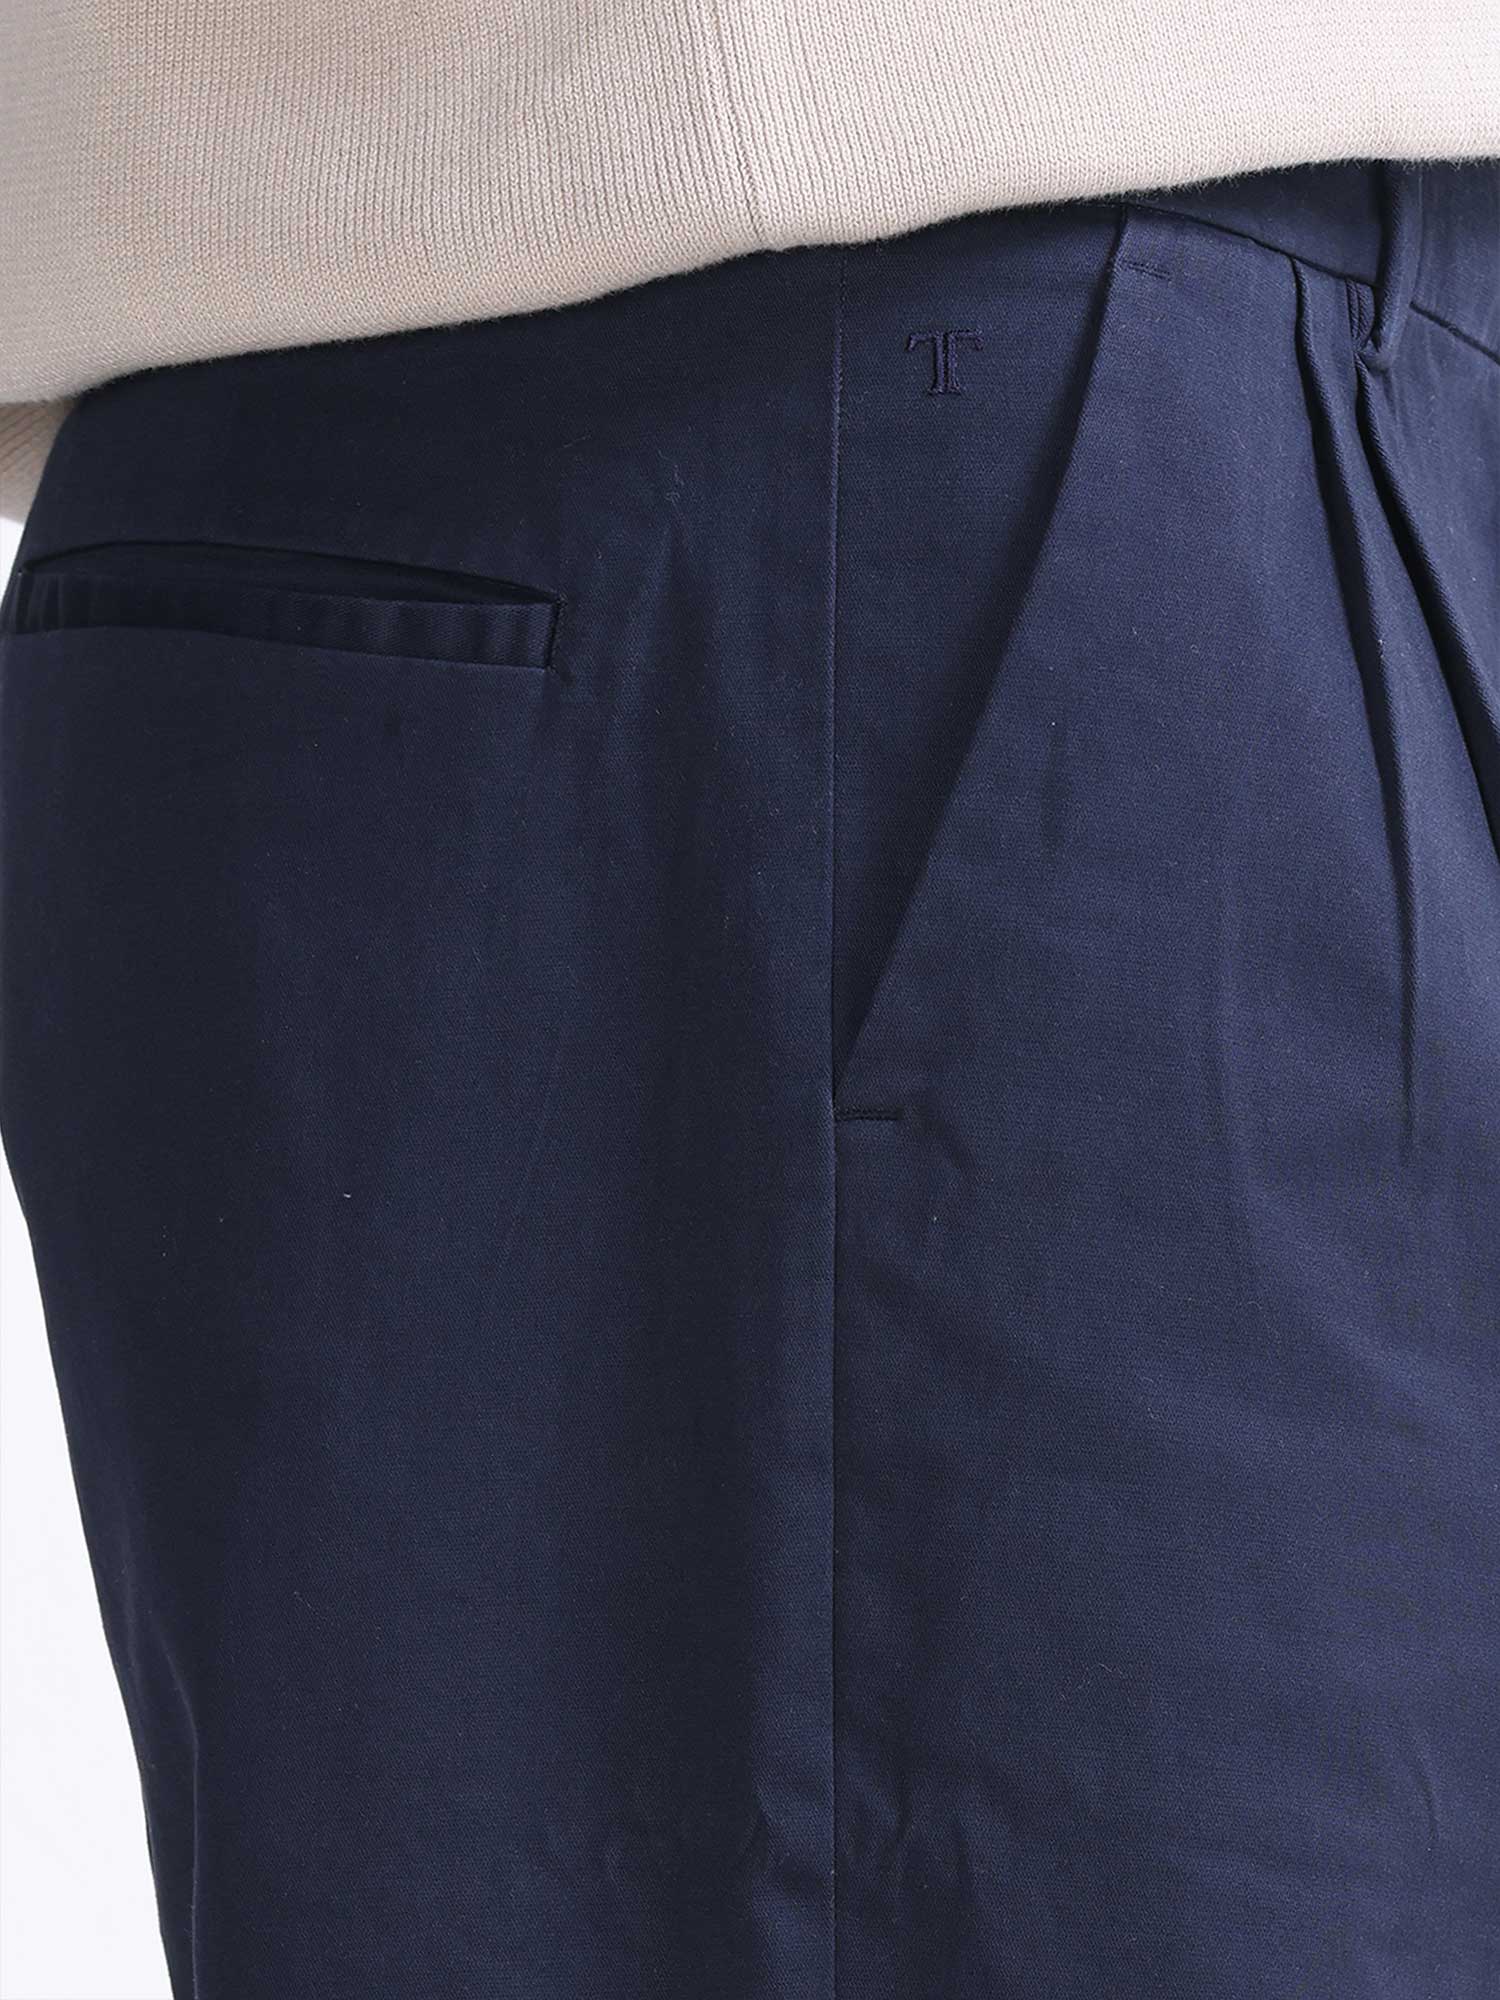 Blue | Trousers For Women | Shop Online | H&M IE